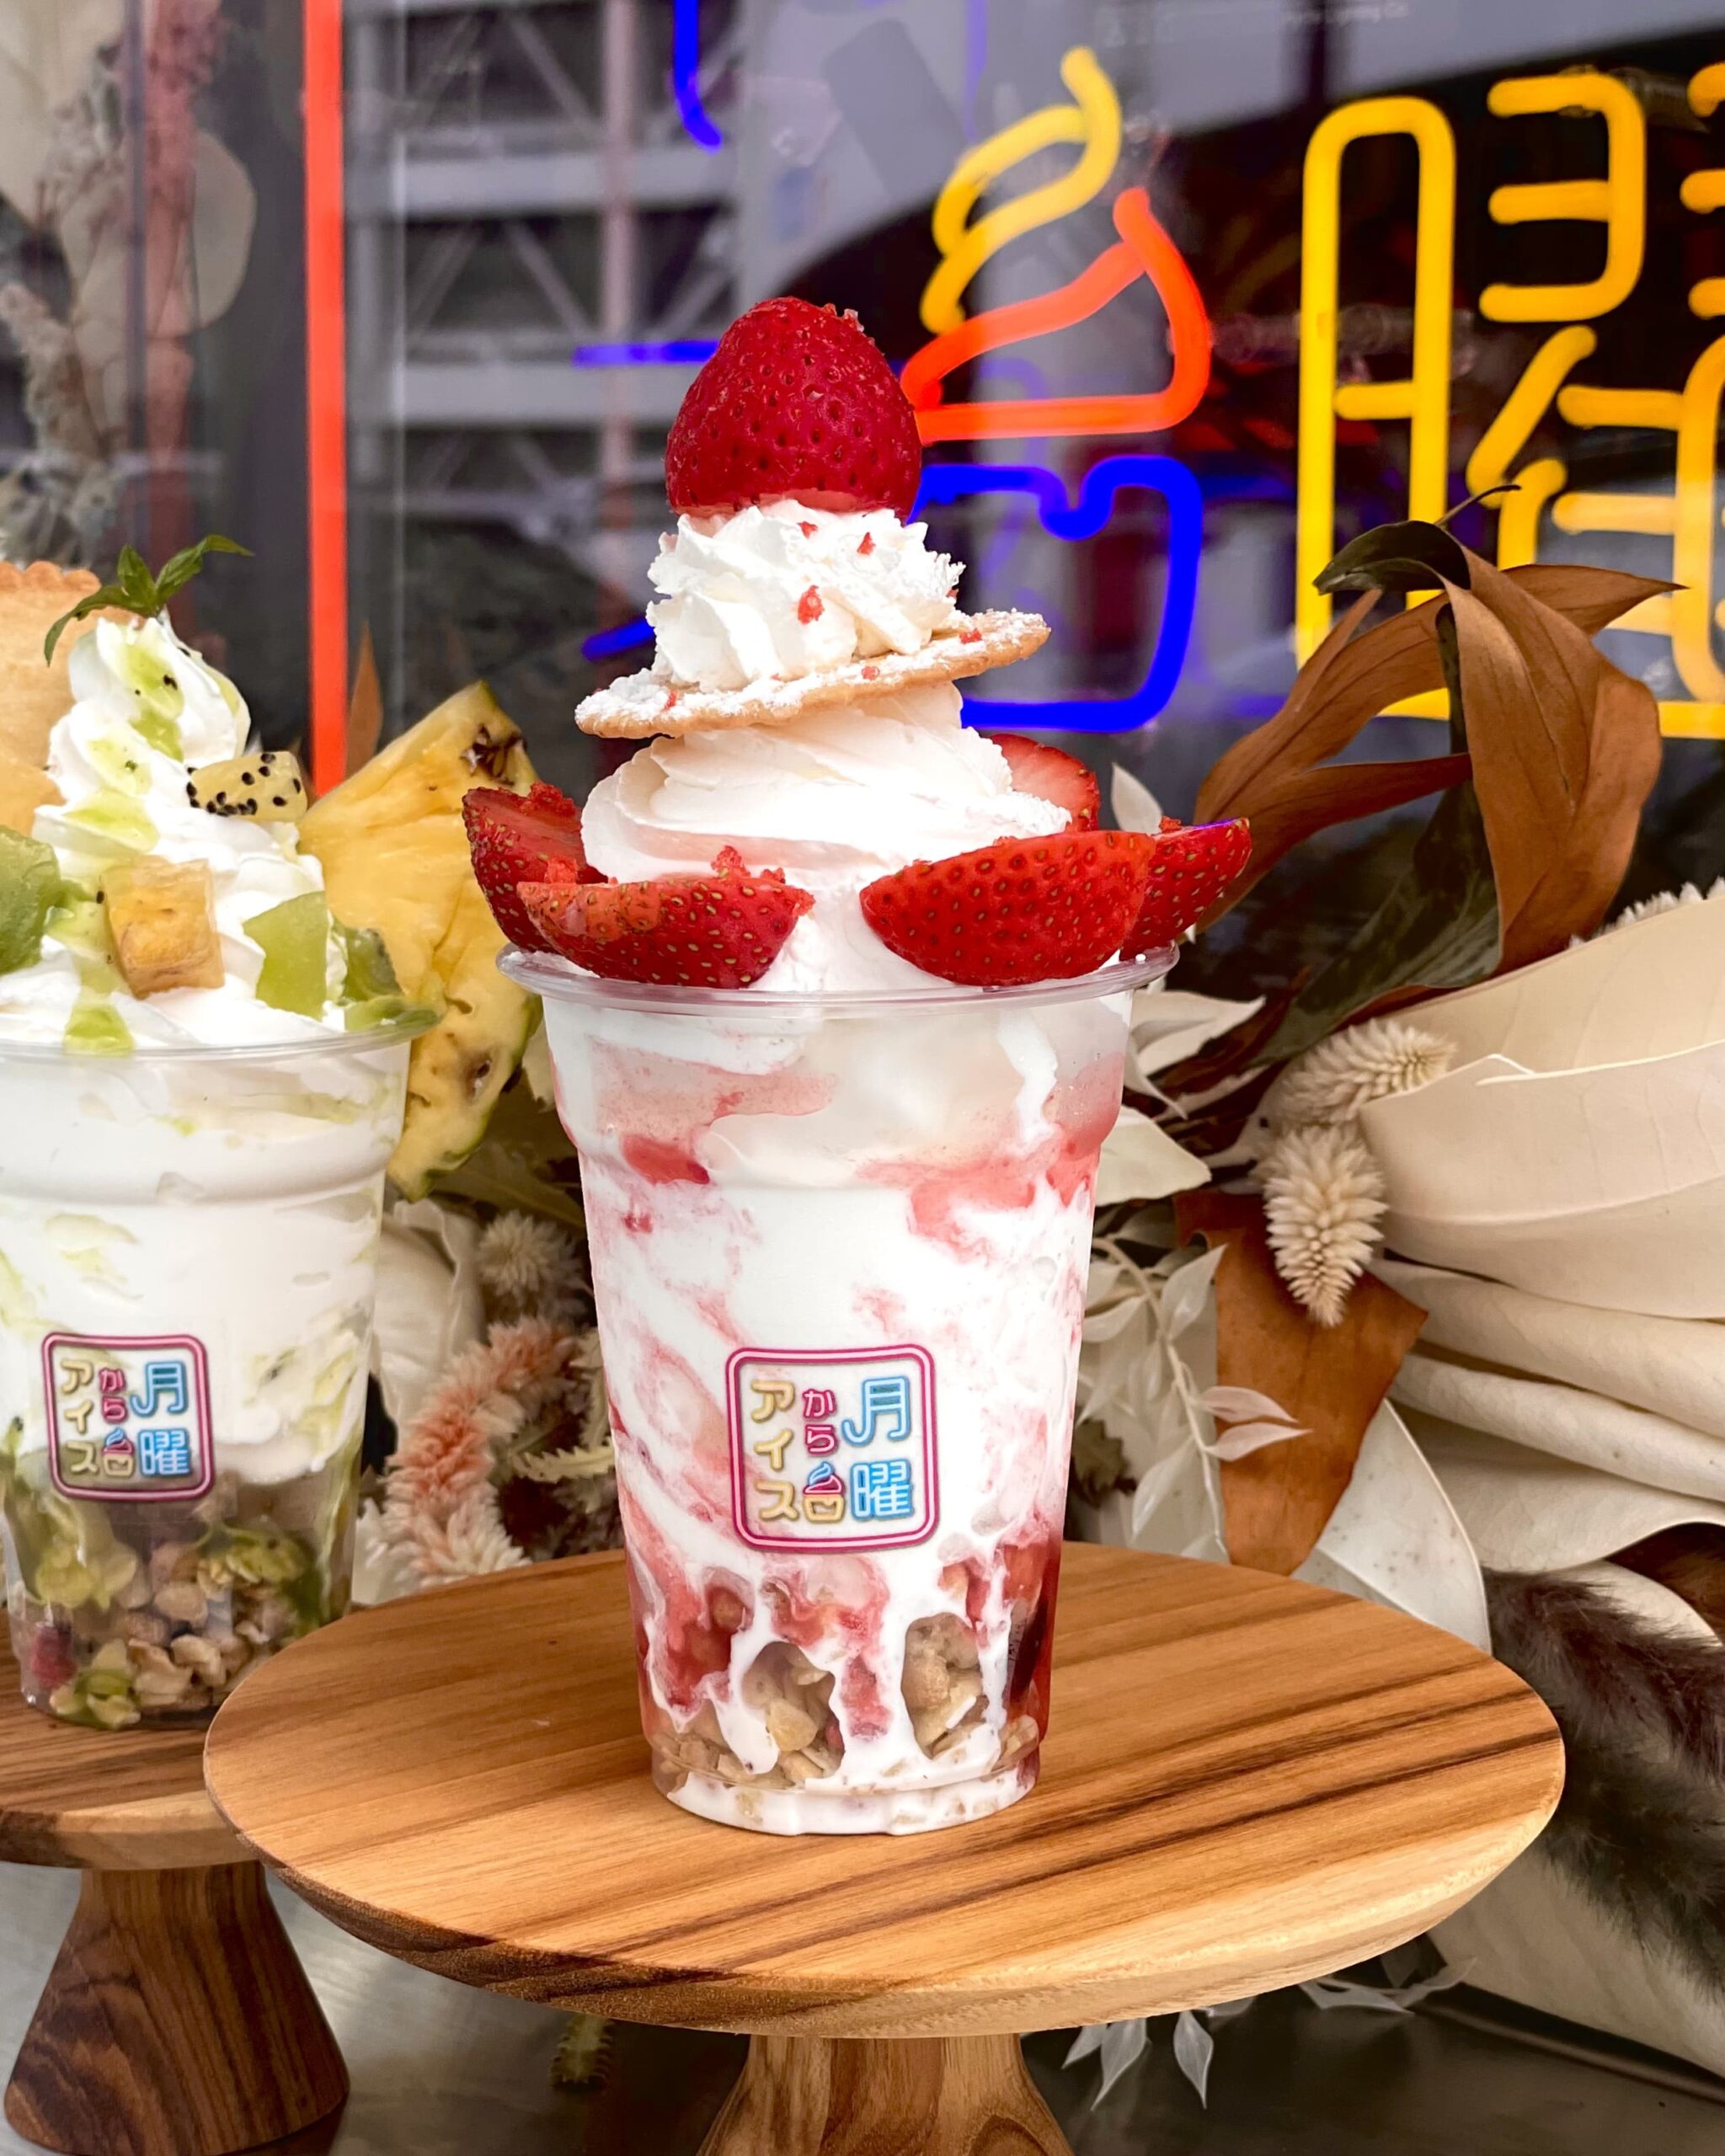 青森県弘前市にある「夜アイス専門店月曜からアイス」の「プレミアム苺アイス」